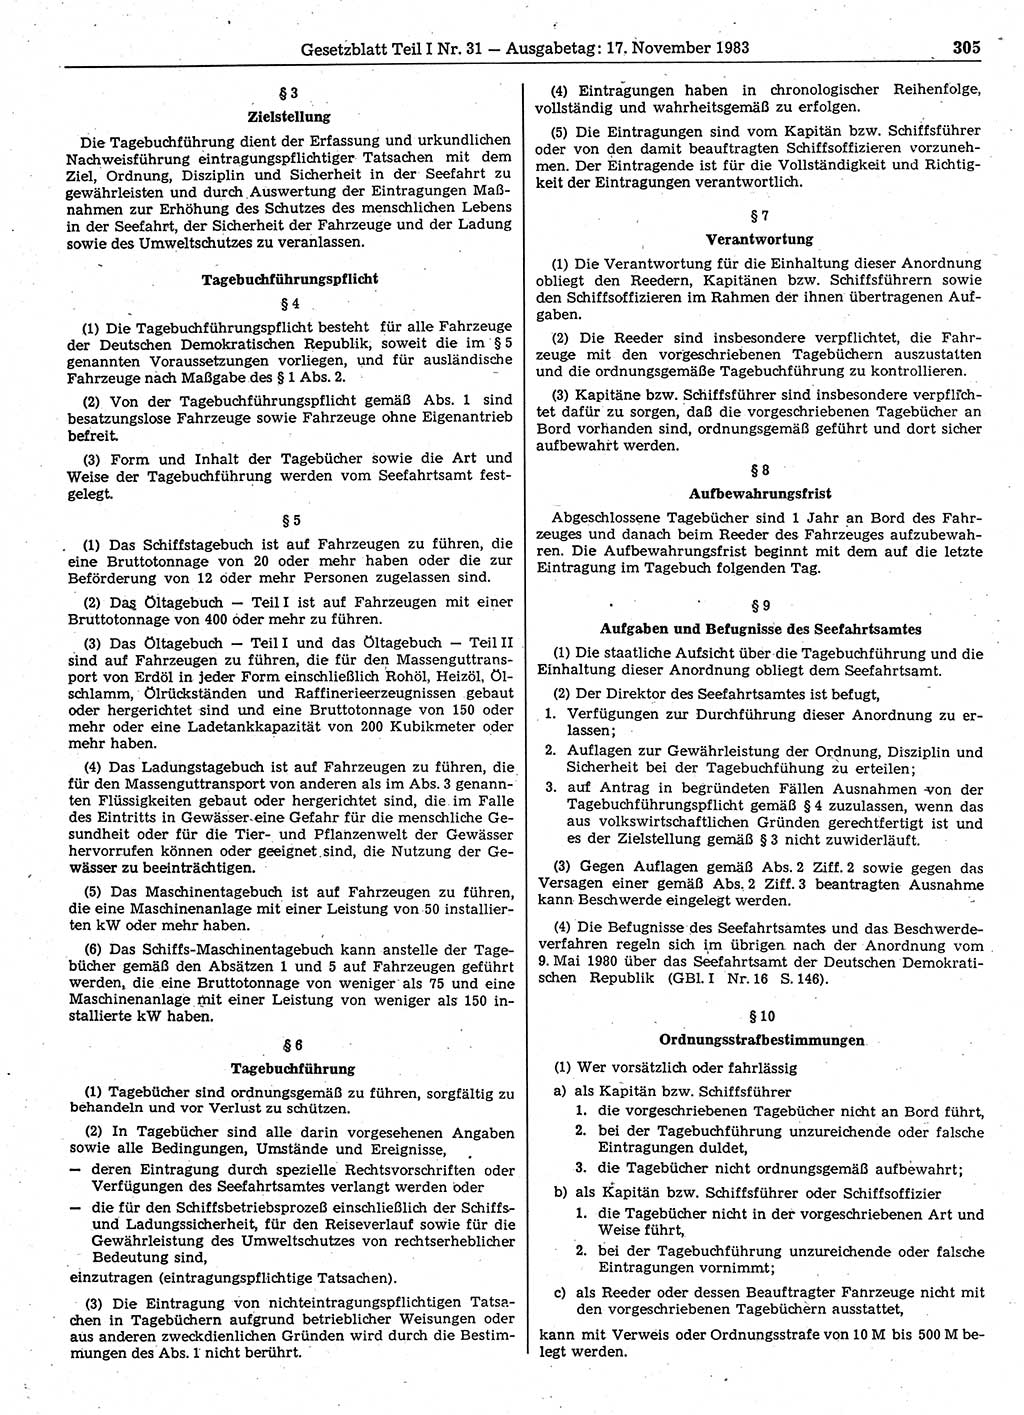 Gesetzblatt (GBl.) der Deutschen Demokratischen Republik (DDR) Teil Ⅰ 1983, Seite 305 (GBl. DDR Ⅰ 1983, S. 305)